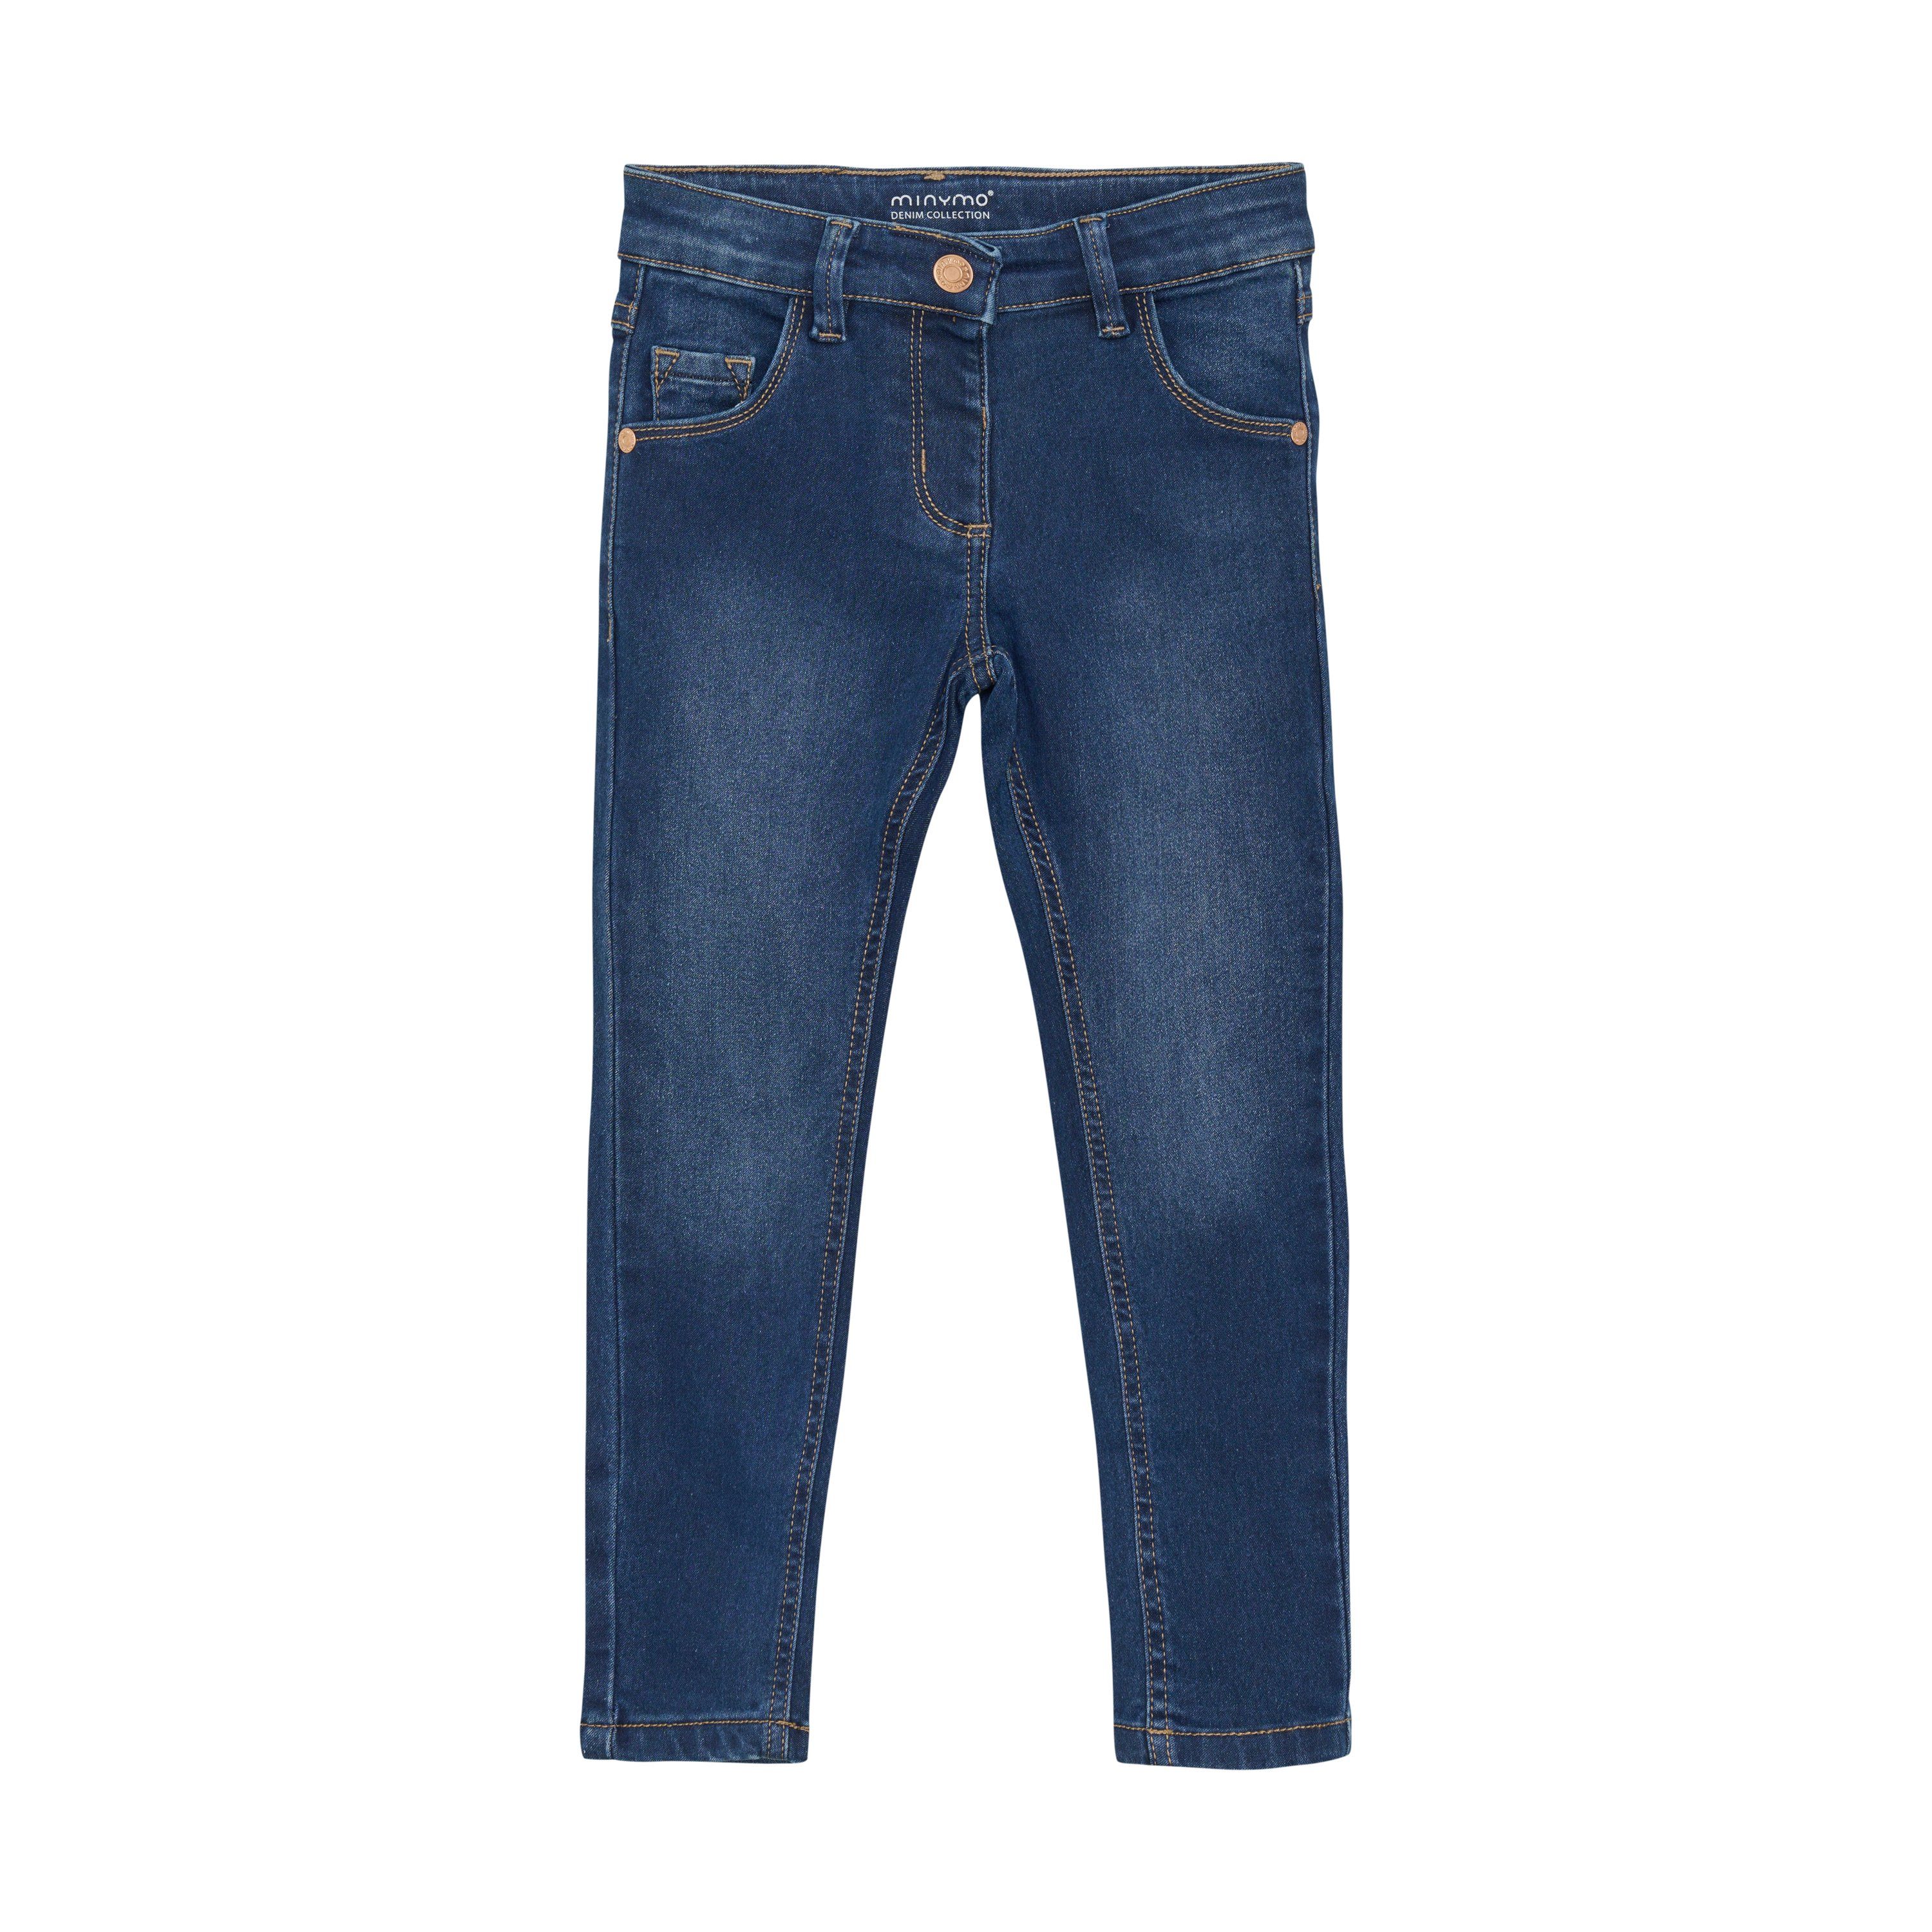 Günstige Marke Minymo 5-Pocket-Jeans MIJeans fit Denim (776) 5623 girl - slim stretch